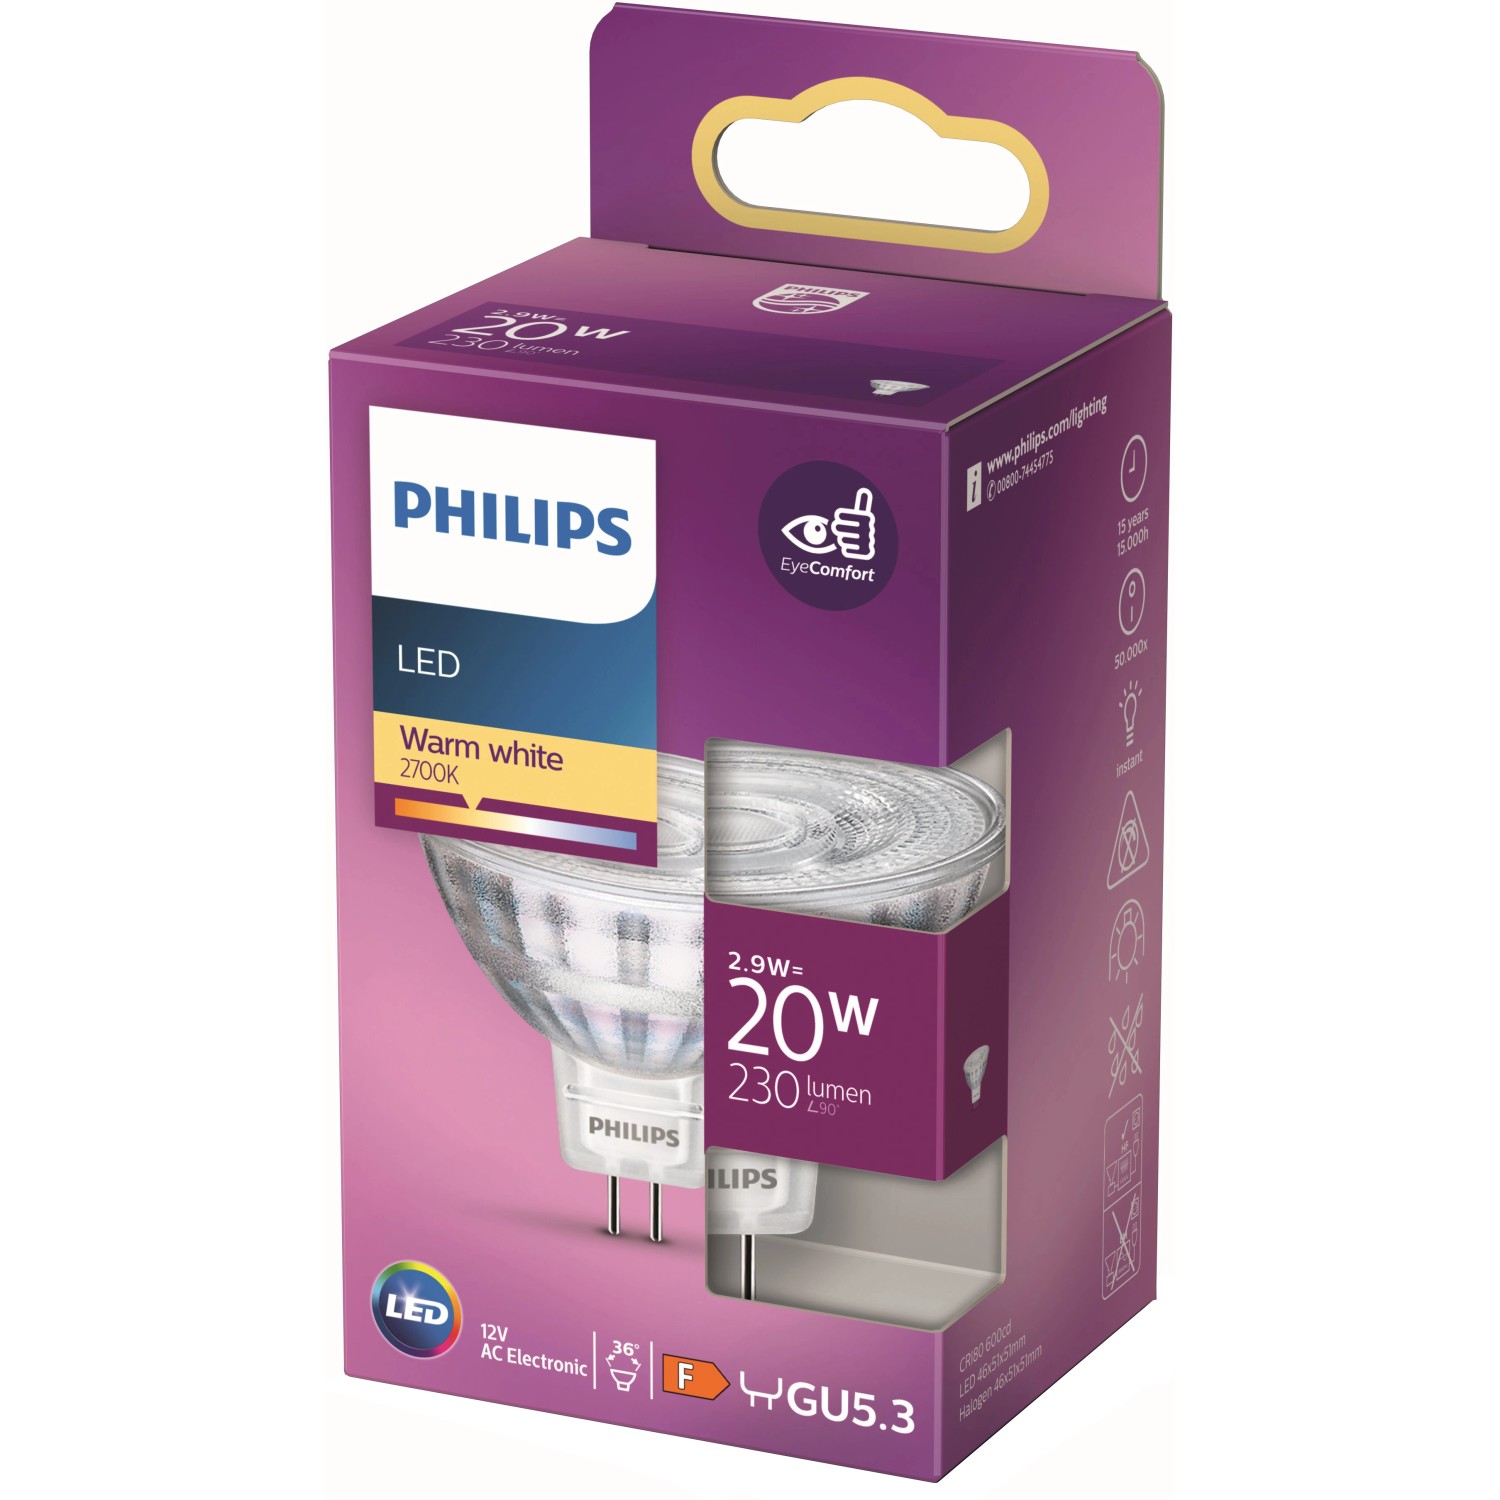 Philips LED-Leuchtmittel GU5.3 2,9 W Warmweiß 230 lm EEK: F 4,6 x 5,1 cm (H x Ø)